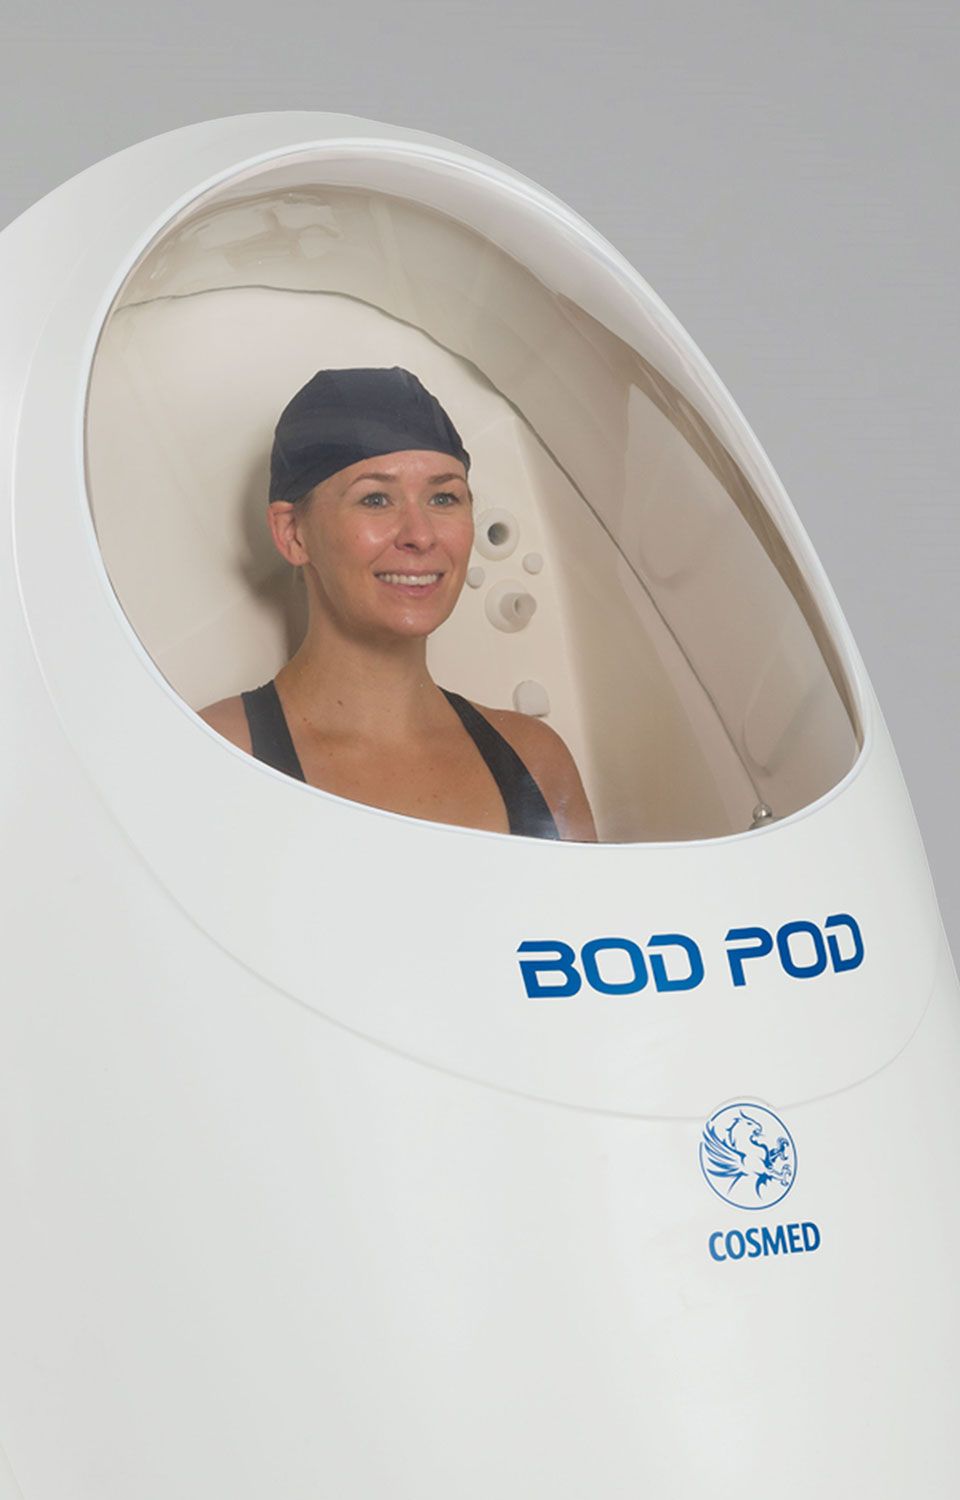 BOD POD GS-X - Test della composizione corporea su soggetto femminile